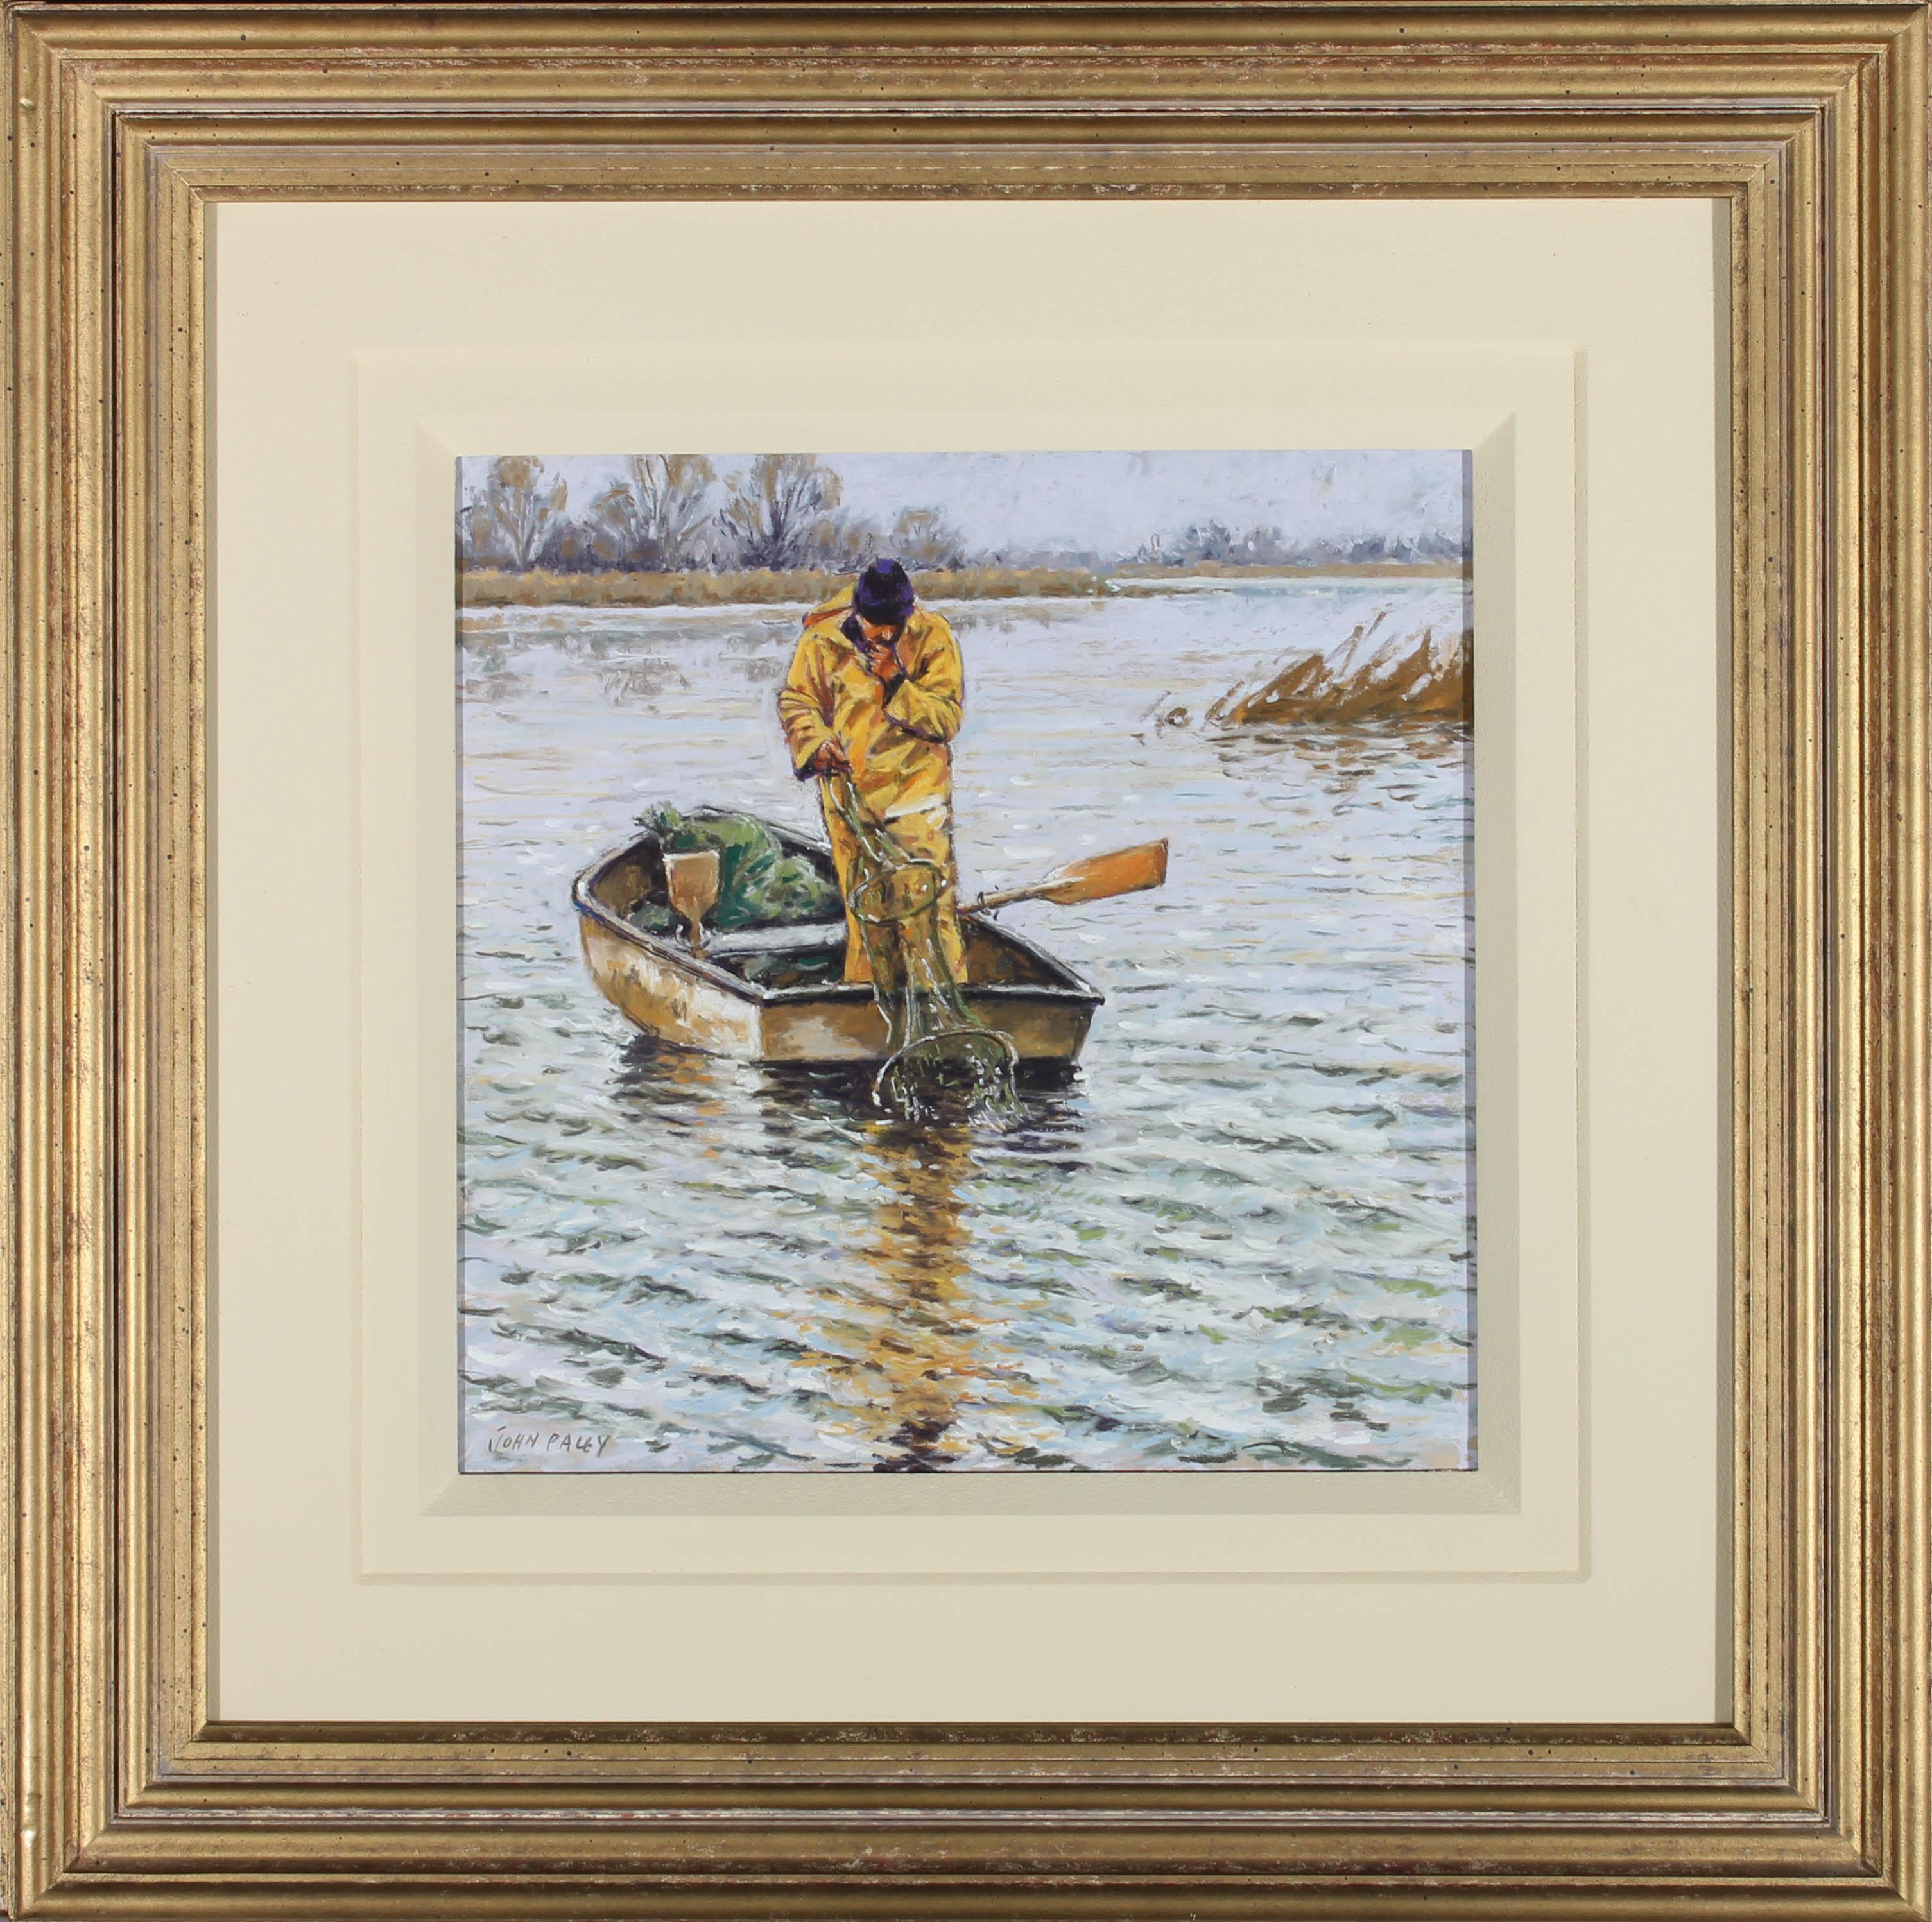 Eine realistische, zeitgenössische Pastellkomposition von John Paley, die einen Fischer darstellt, der draußen auf dem Wasser seinen Fang aus den geköderten Netzen einsammelt. Der Mann sieht neugierig aus und fragt sich, warum nichts gefangen wurde.